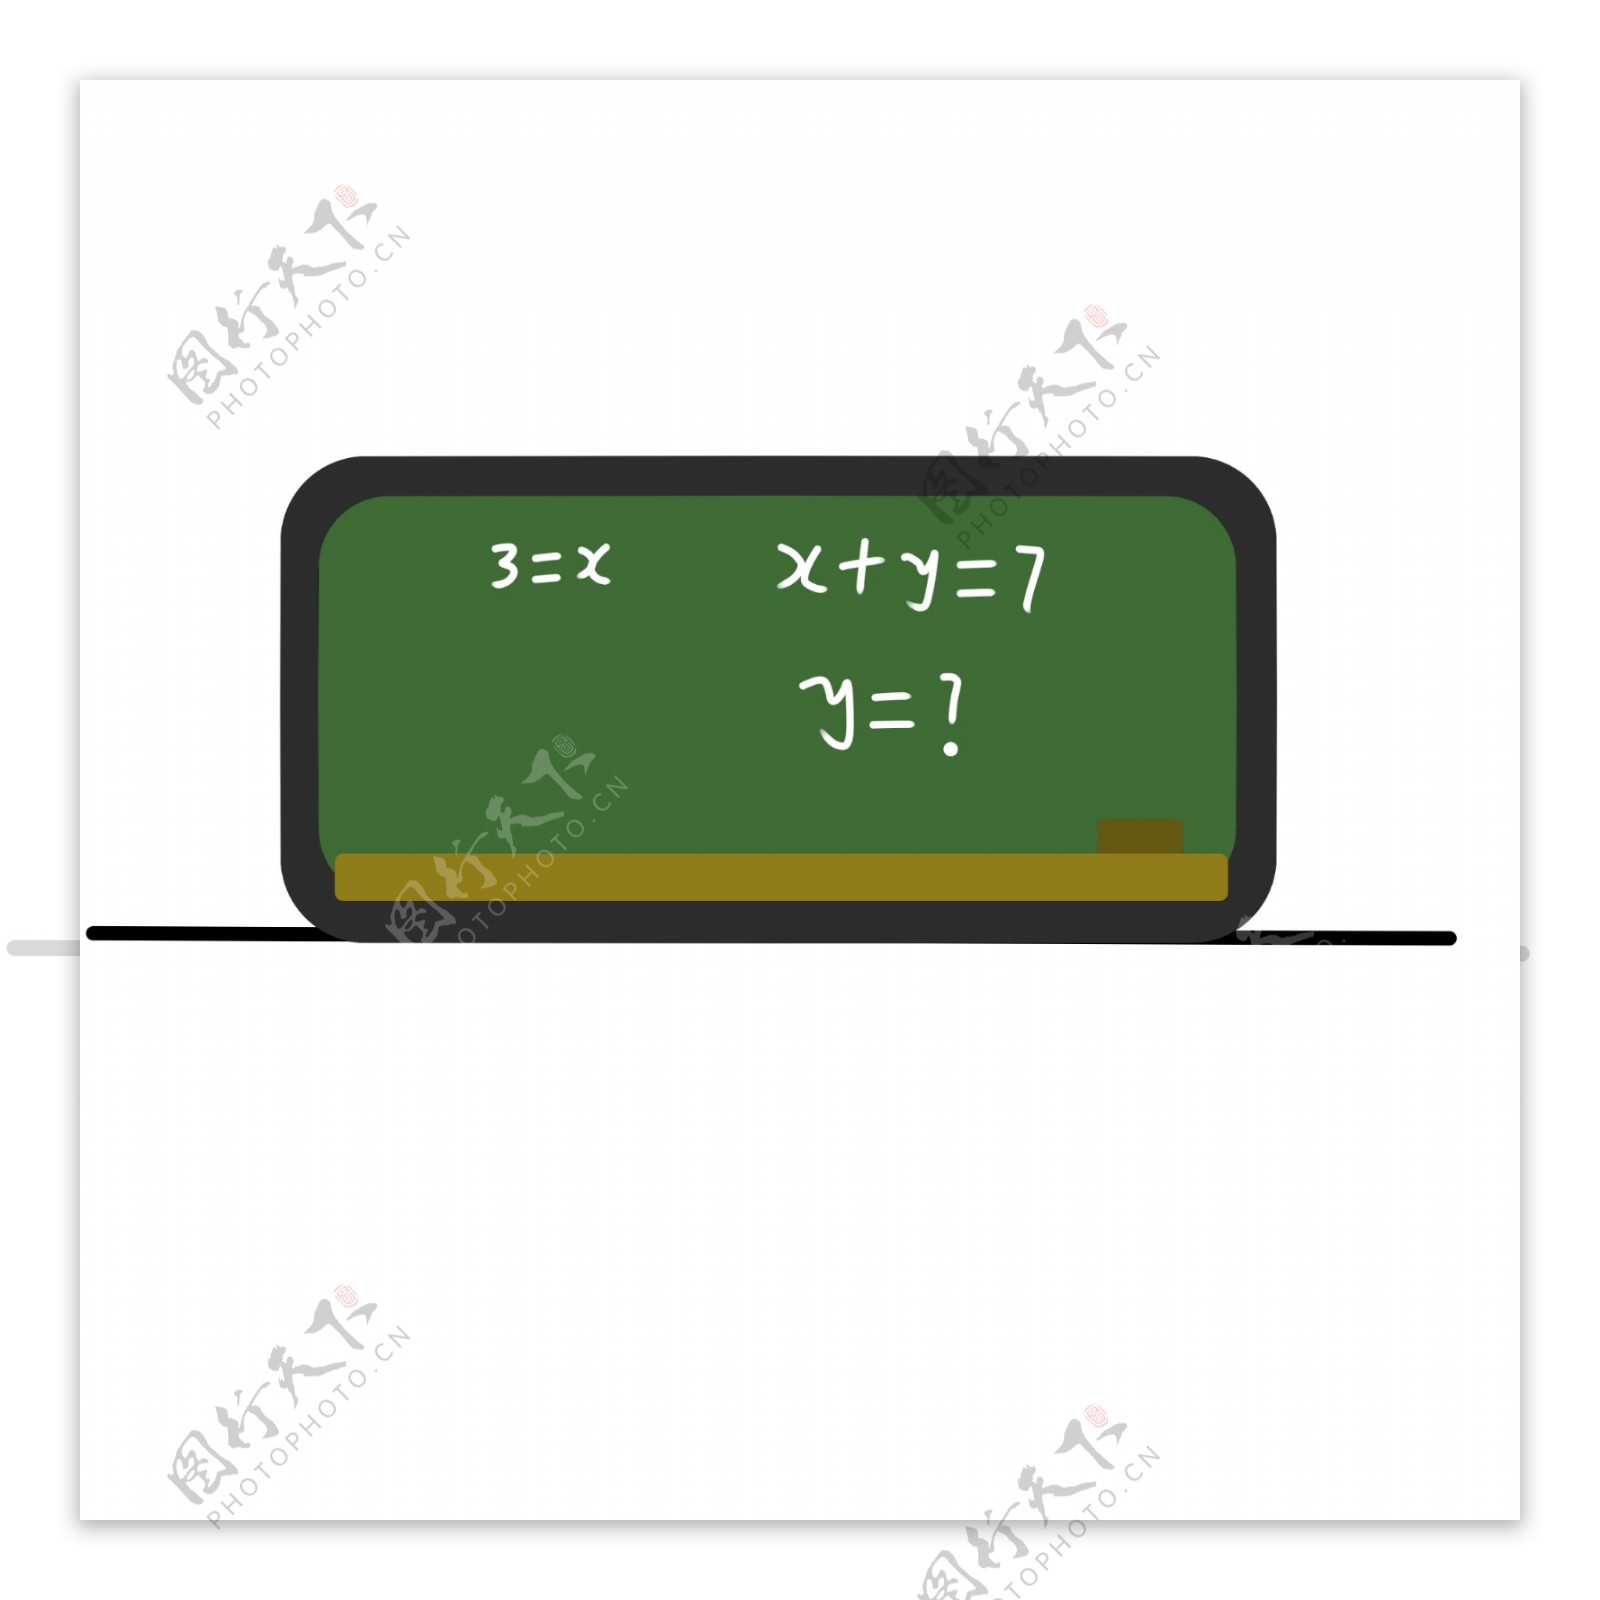 手绘卡通黑板教学学生课室学校数学方程式